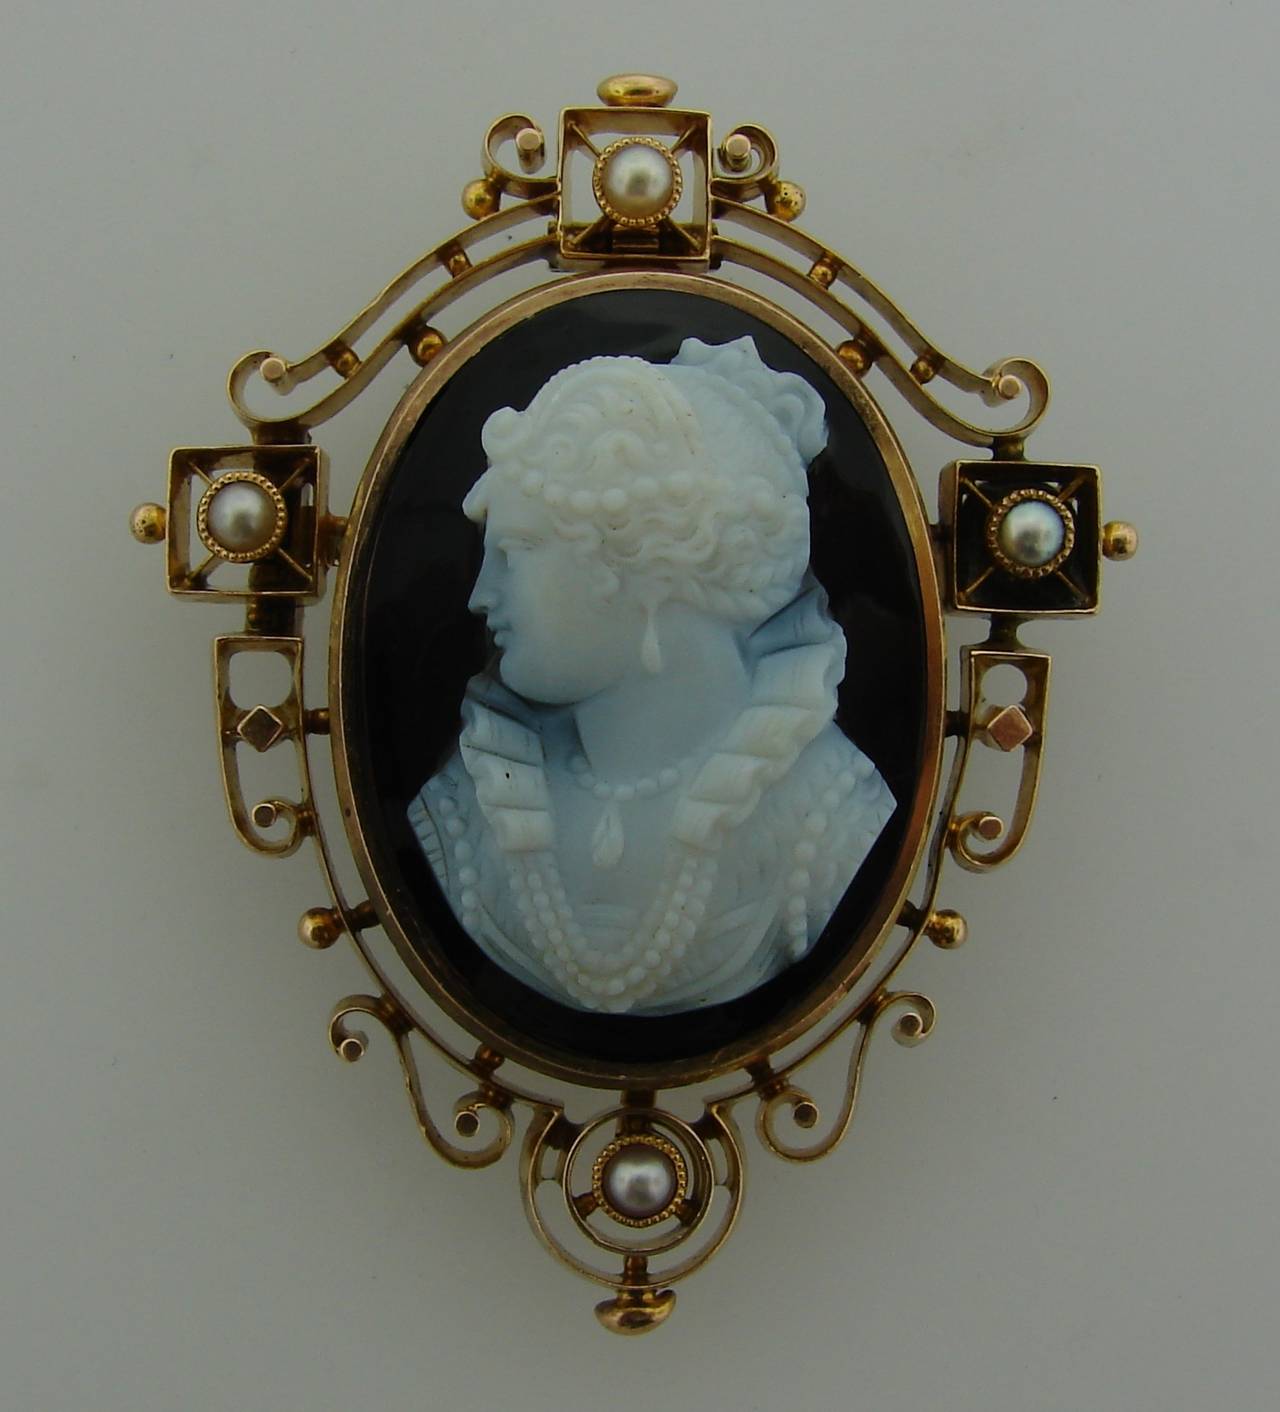 Jolie épingle/pendentif victorien en camée avec un beau buste de femme sculpté sur agate. Le camée est encadré d'or jaune 14k (testé) et rehaussé de quatre perles.
Le camée mesure 1-1/8